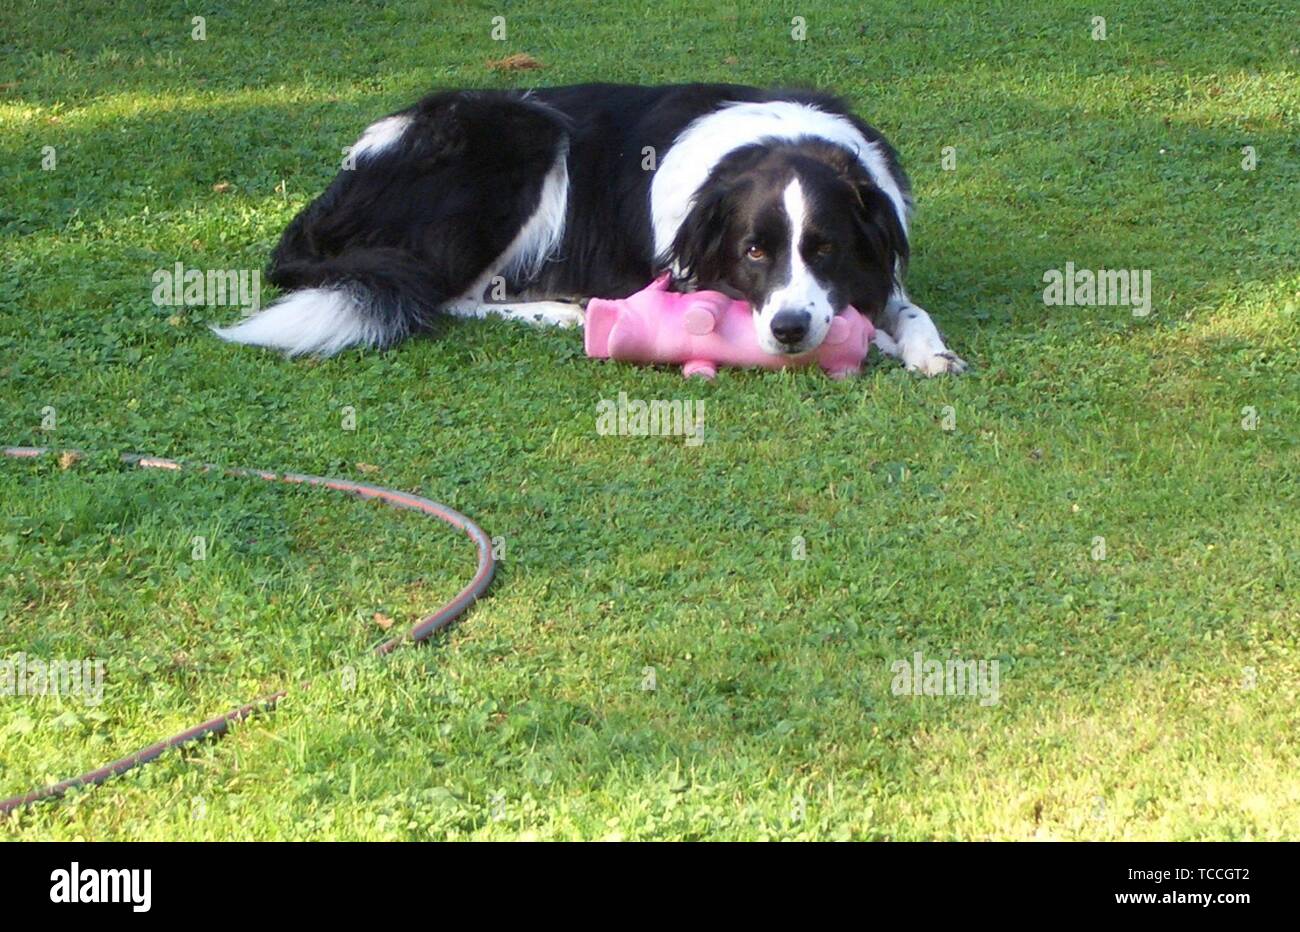 Zum Glück der Border Collie mit dem Kopf auf seinem Lieblingsspielzeug liegt, das rosa Schweinchen Stockfoto